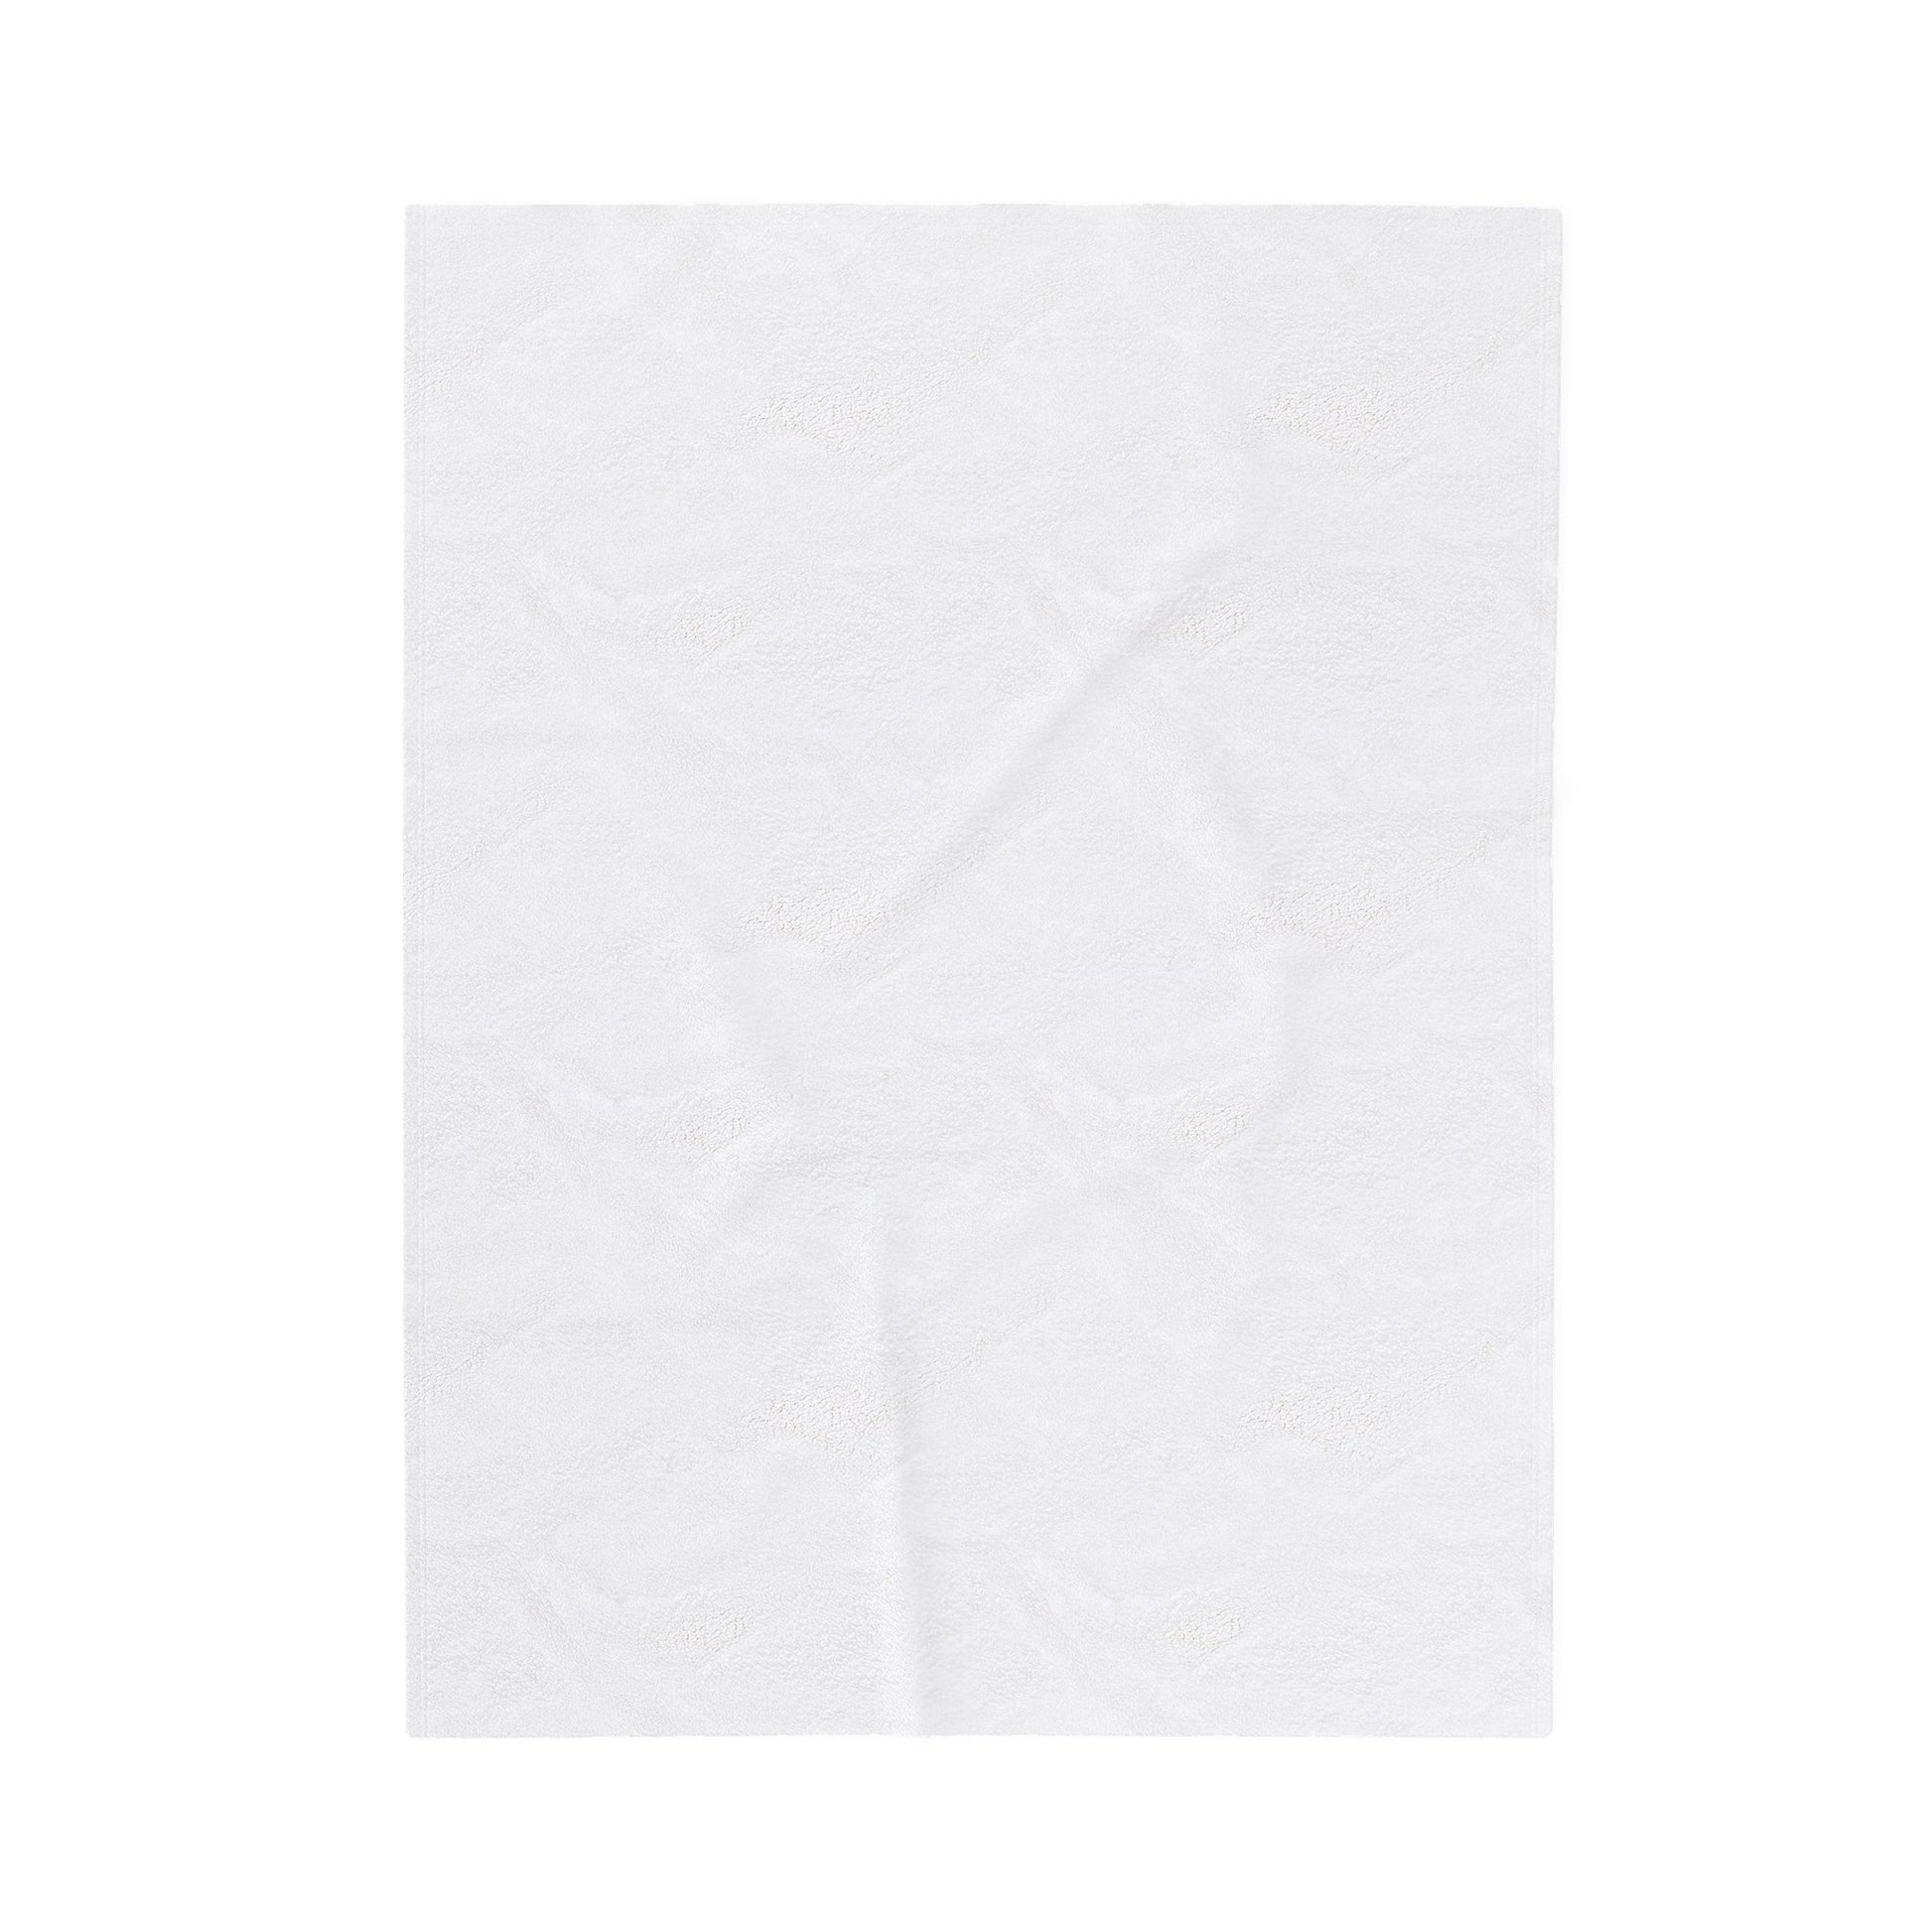 JZay (Jay-Zay) - Plush Blanket-Plush Blankets-Mr.Zao - Krazy Art Gallery